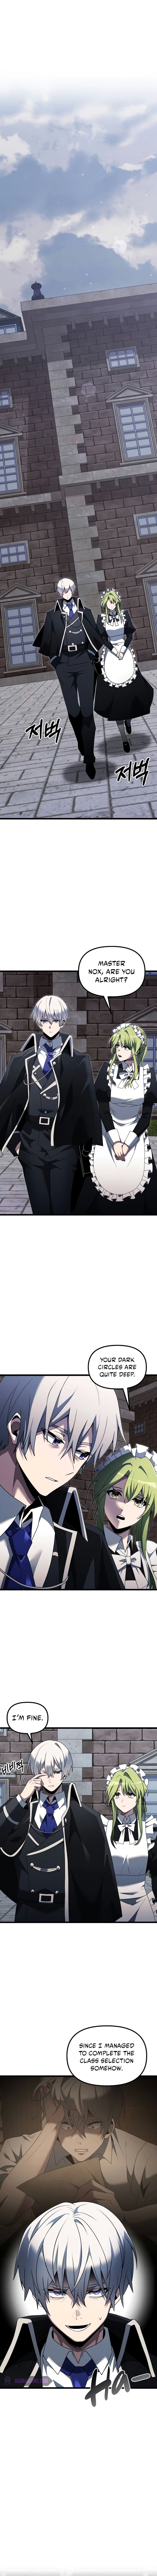 Terminally Ill Genius Dark Knight Chapter 48 Page 1